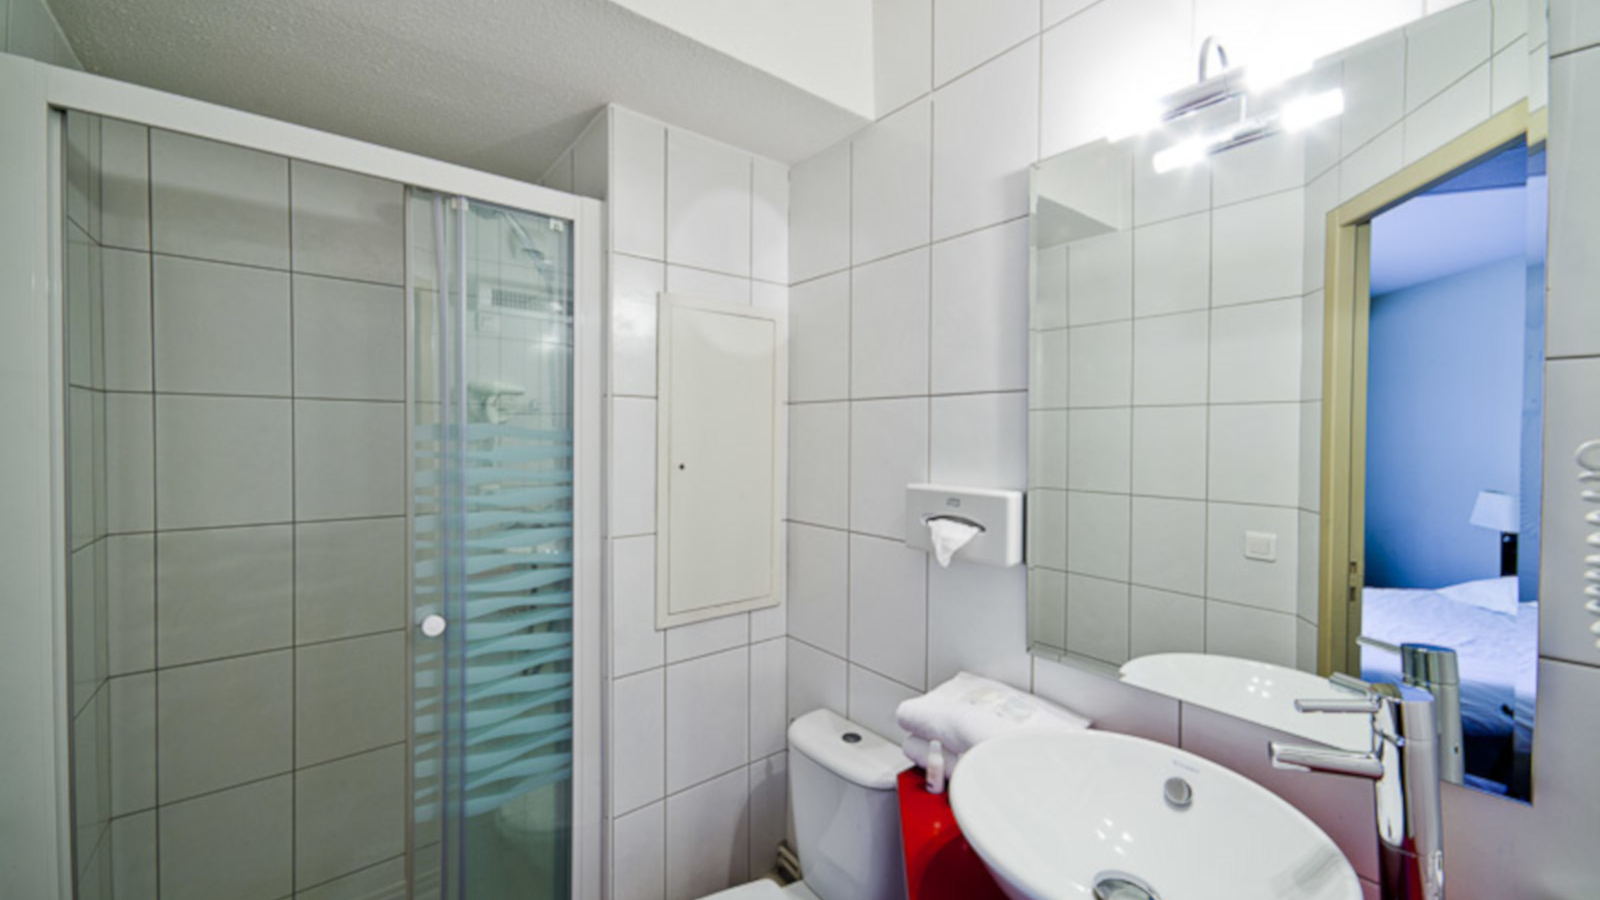 Salle de bain - Hôtel Ibis Style - Brézet